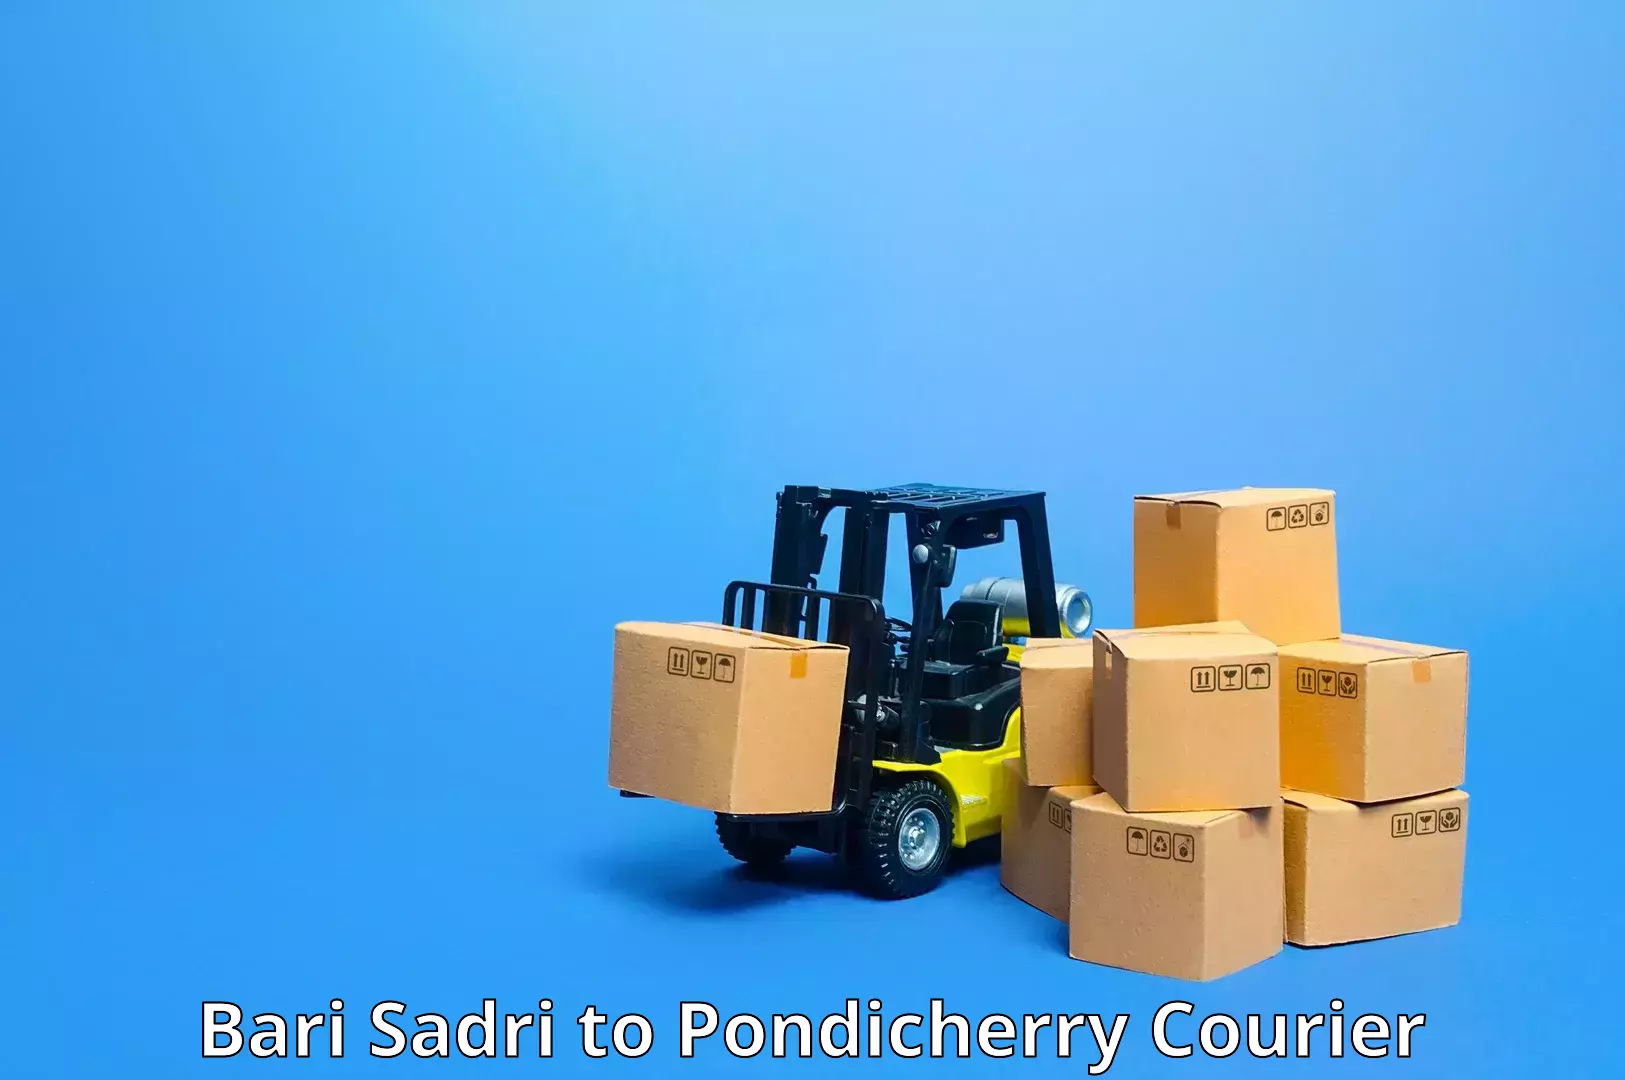 User-friendly delivery service Bari Sadri to Pondicherry